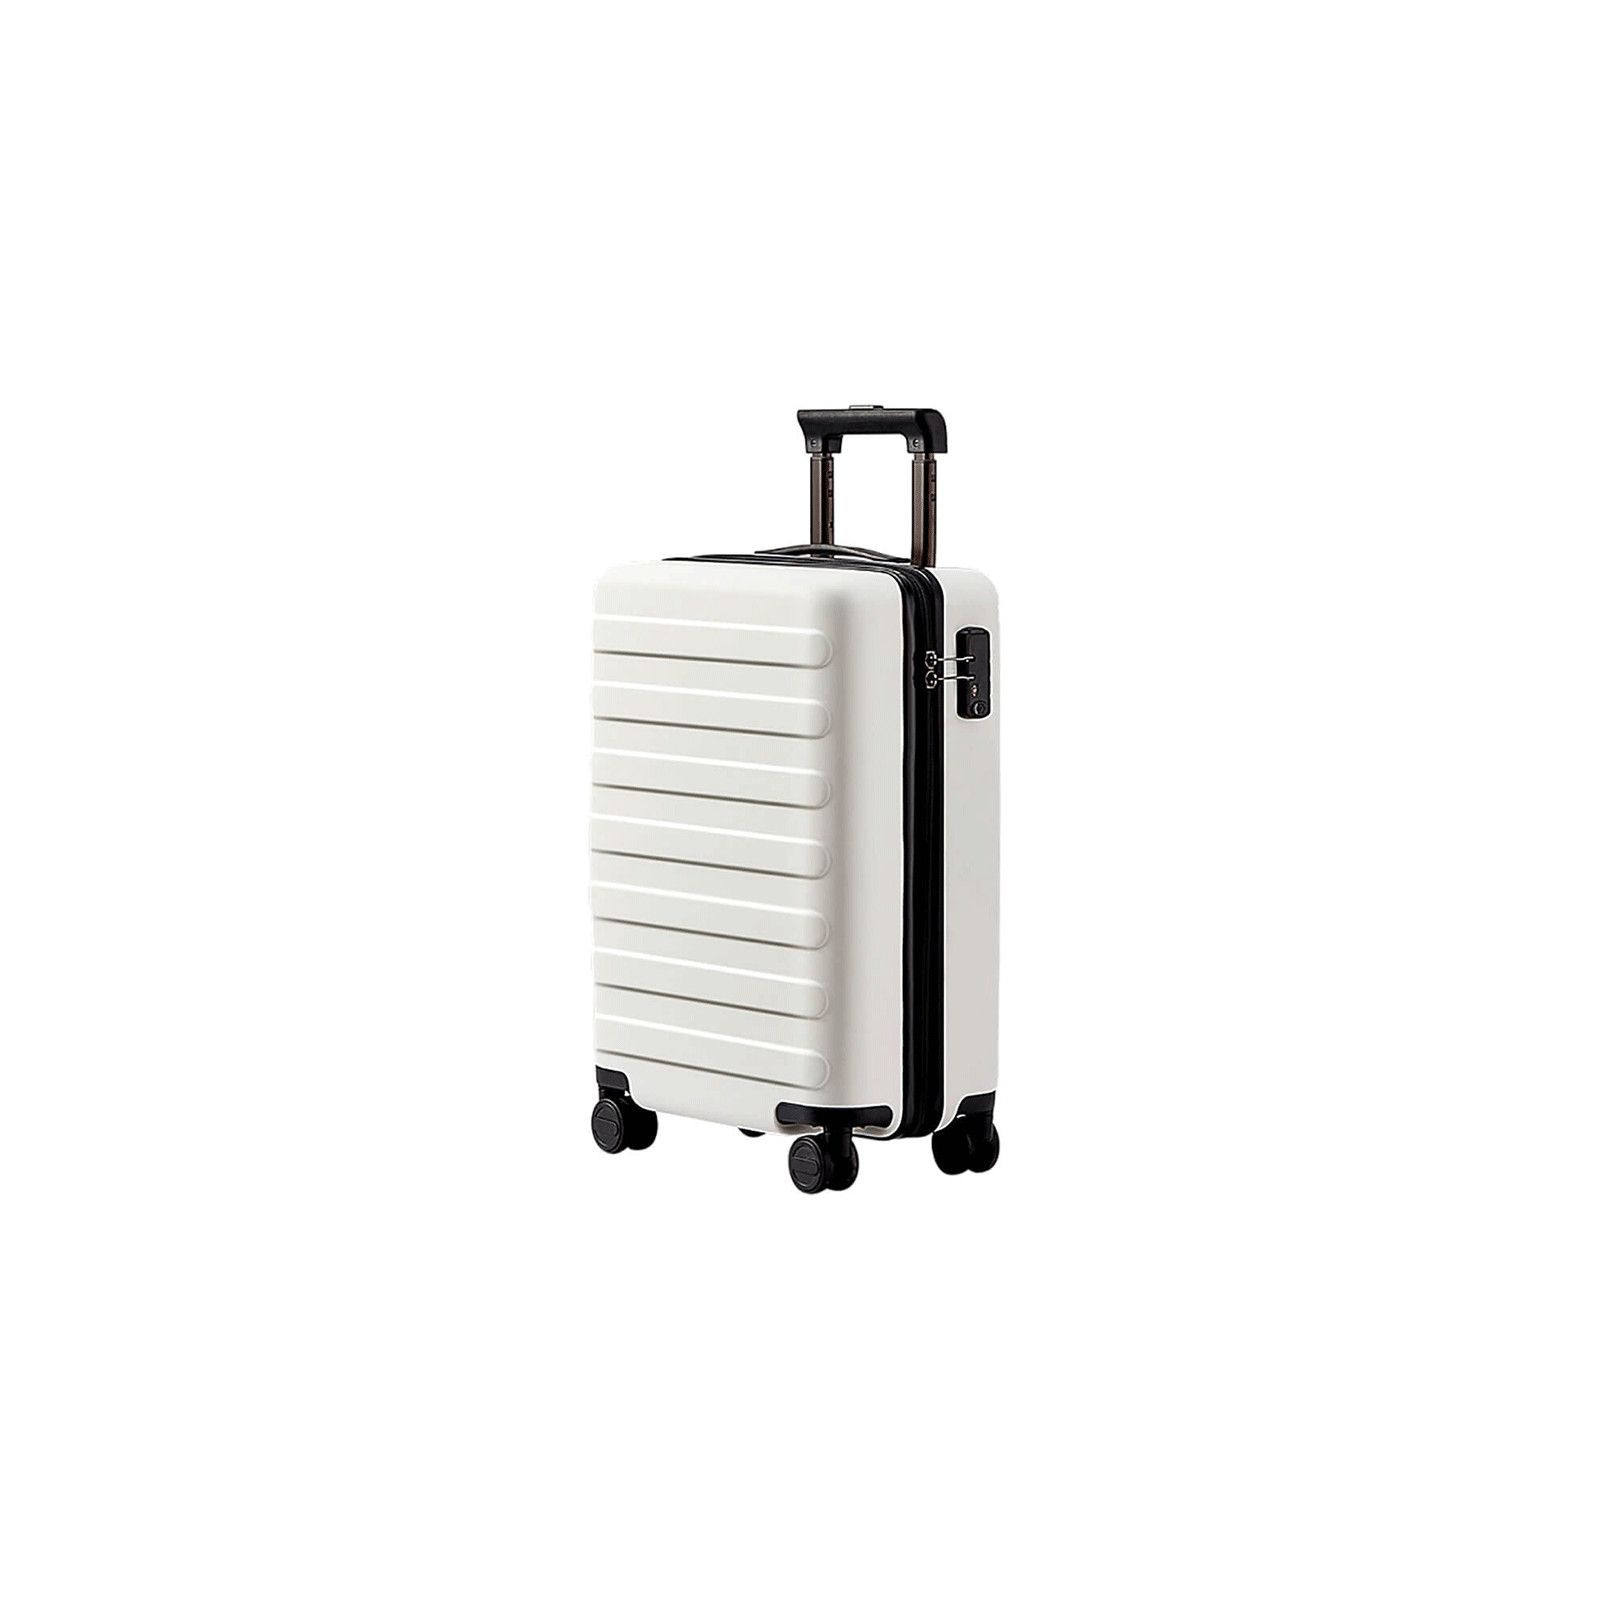 Чемодан Xiaomi Ninetygo Business Travel Luggage 24" Titanium Grey (6970055343459)